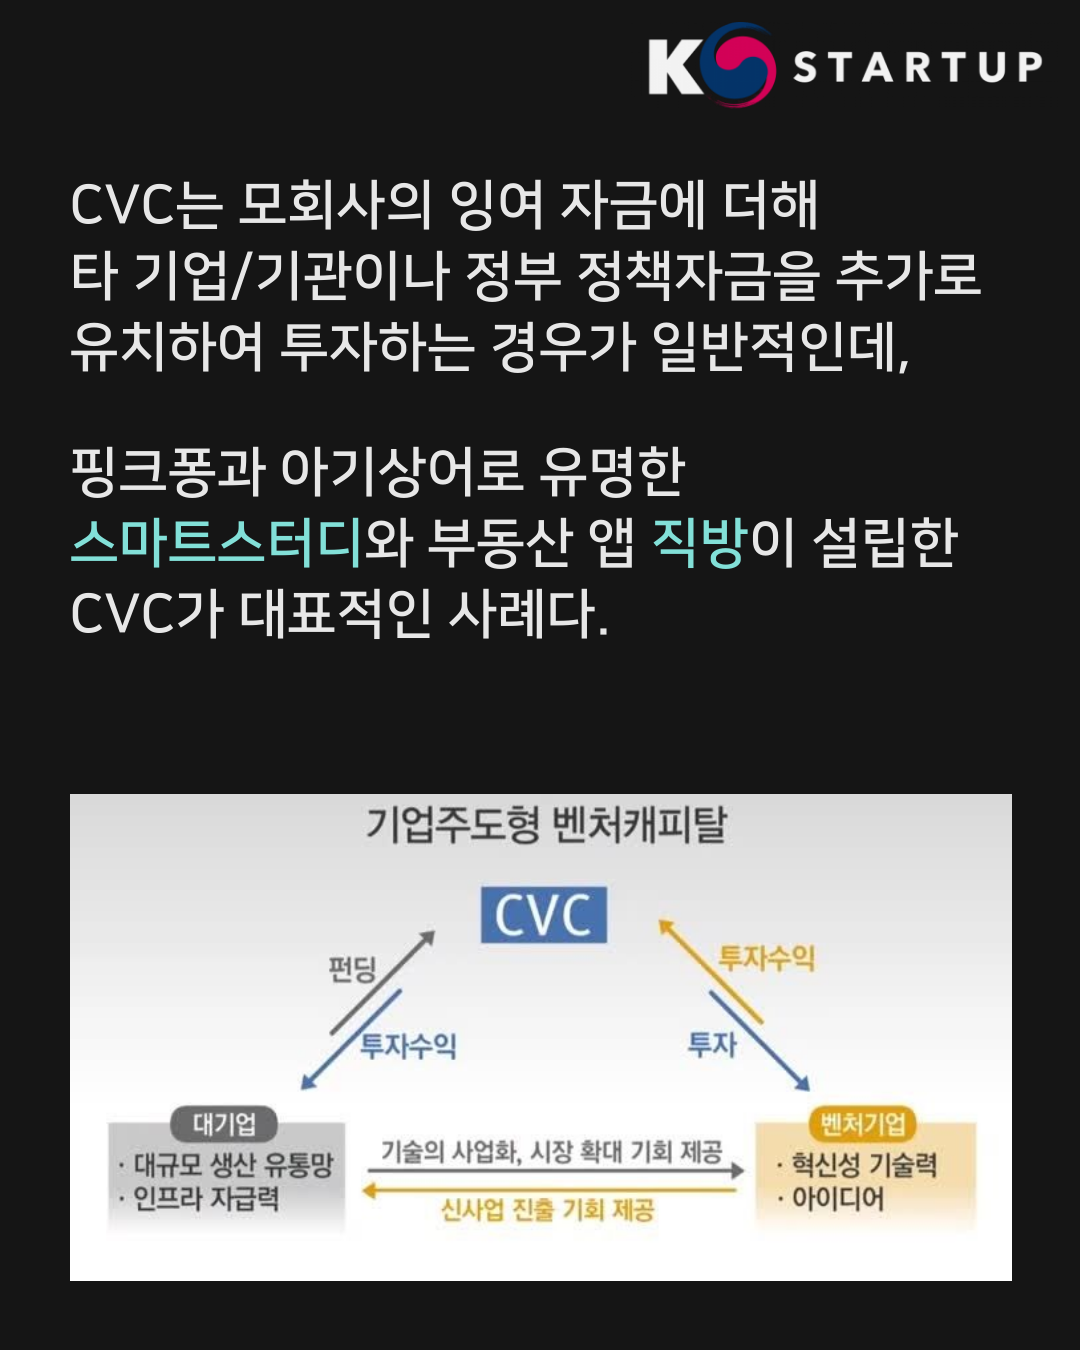 CVC는 모회사의 잉여 자금에 더해 타 기업/기관이나 정부 정책자금을 추가로 유치하여 투자하는 경우가 일반적인데,
핑크퐁과 아기상어로 유명한 ‘스마트스터디’와 부동산 앱 ‘직방’이 설립한 CVC가 대표적인 사례다.